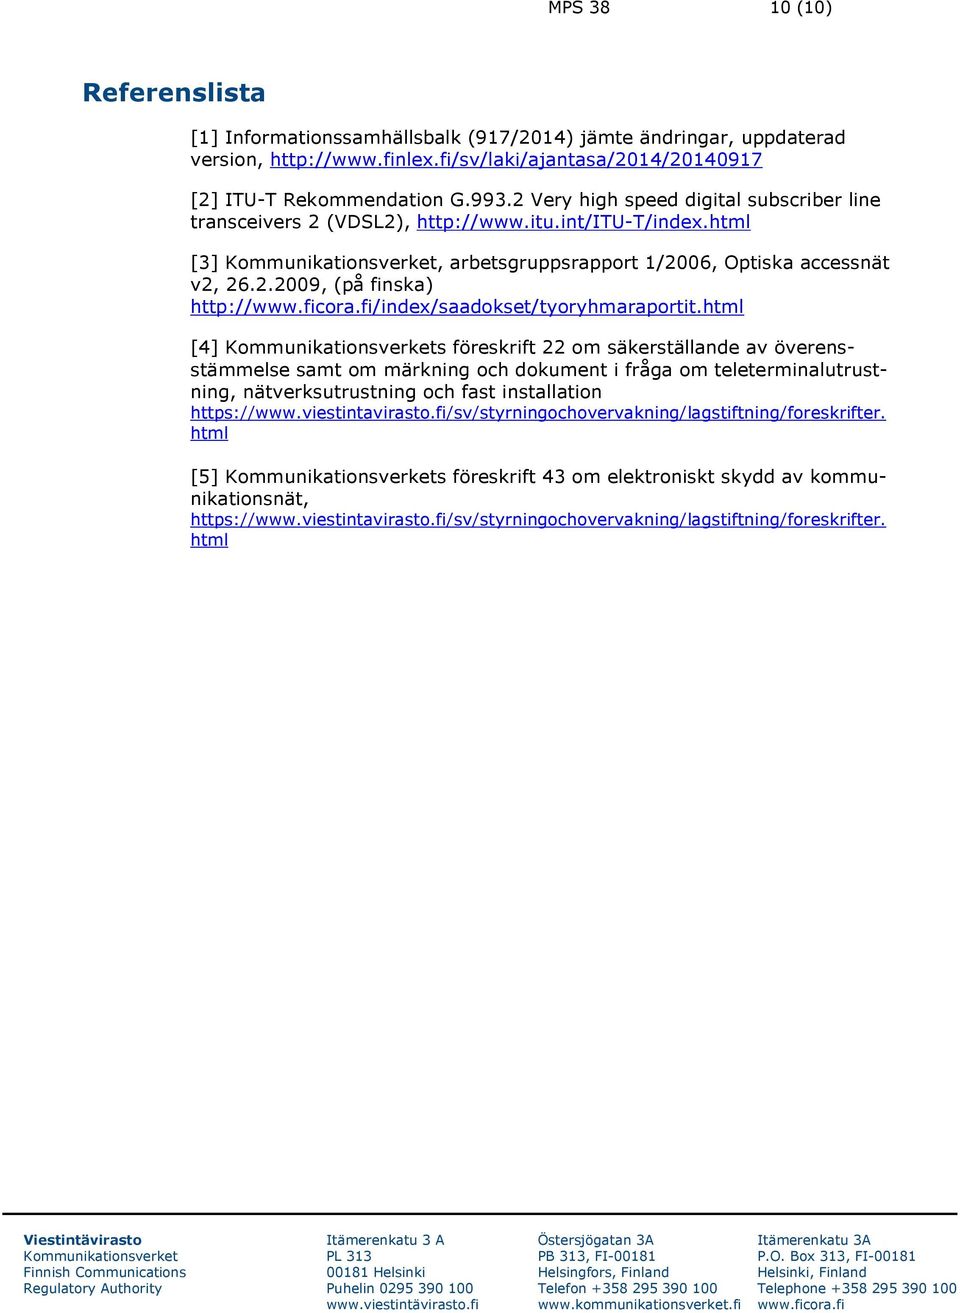 html [4] s föreskrift 22 om säkerställande av överensstämmelse samt om märkning och dokument i fråga om teleterminalutrustning, nätverksutrustning och fast installation https://www.viestintavirasto.